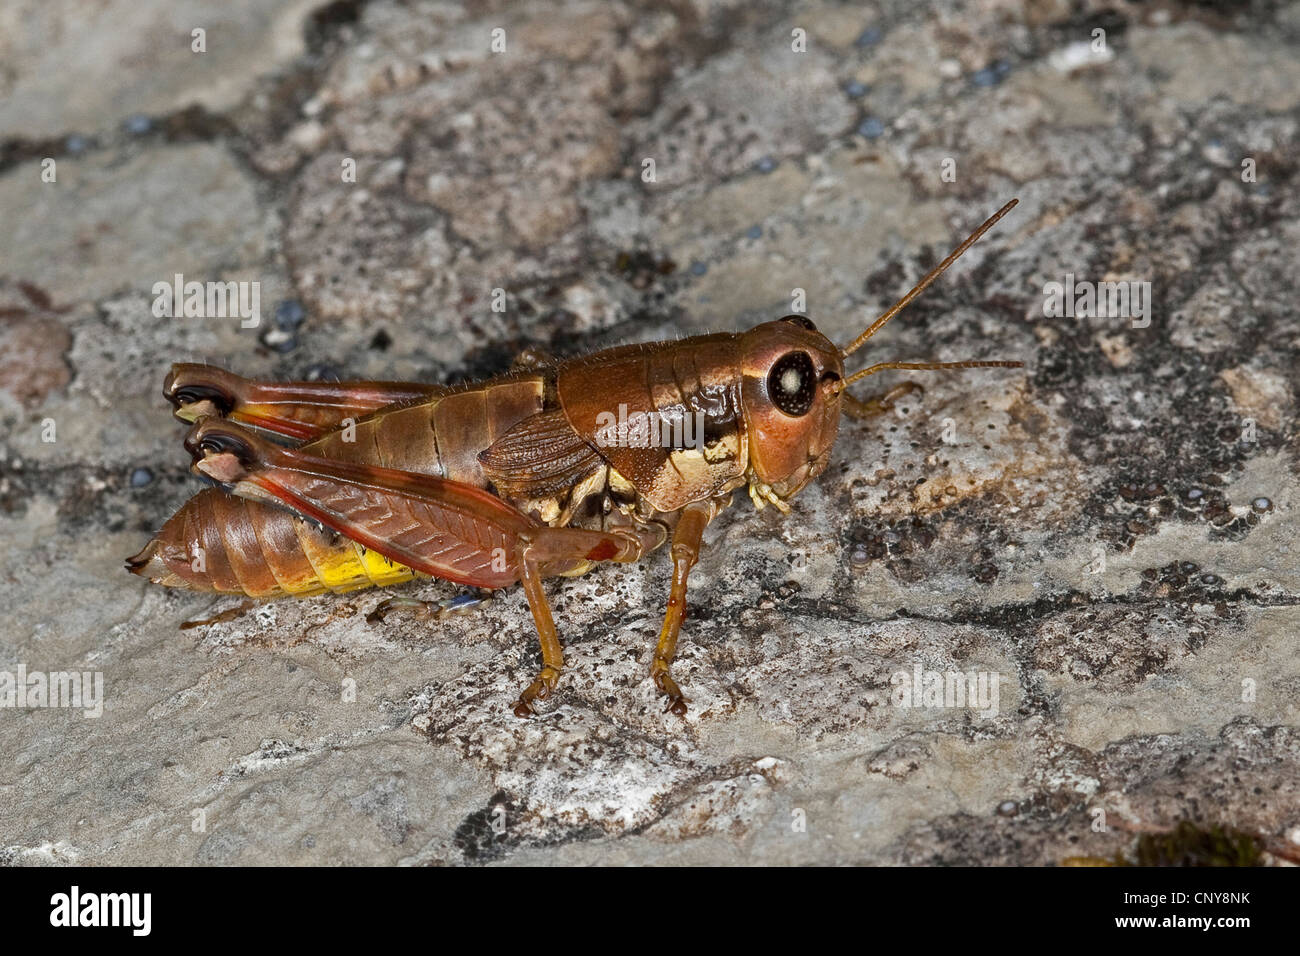 brown mountain grasshopper (Podisma pedestris), sitting on rock Stock Photo